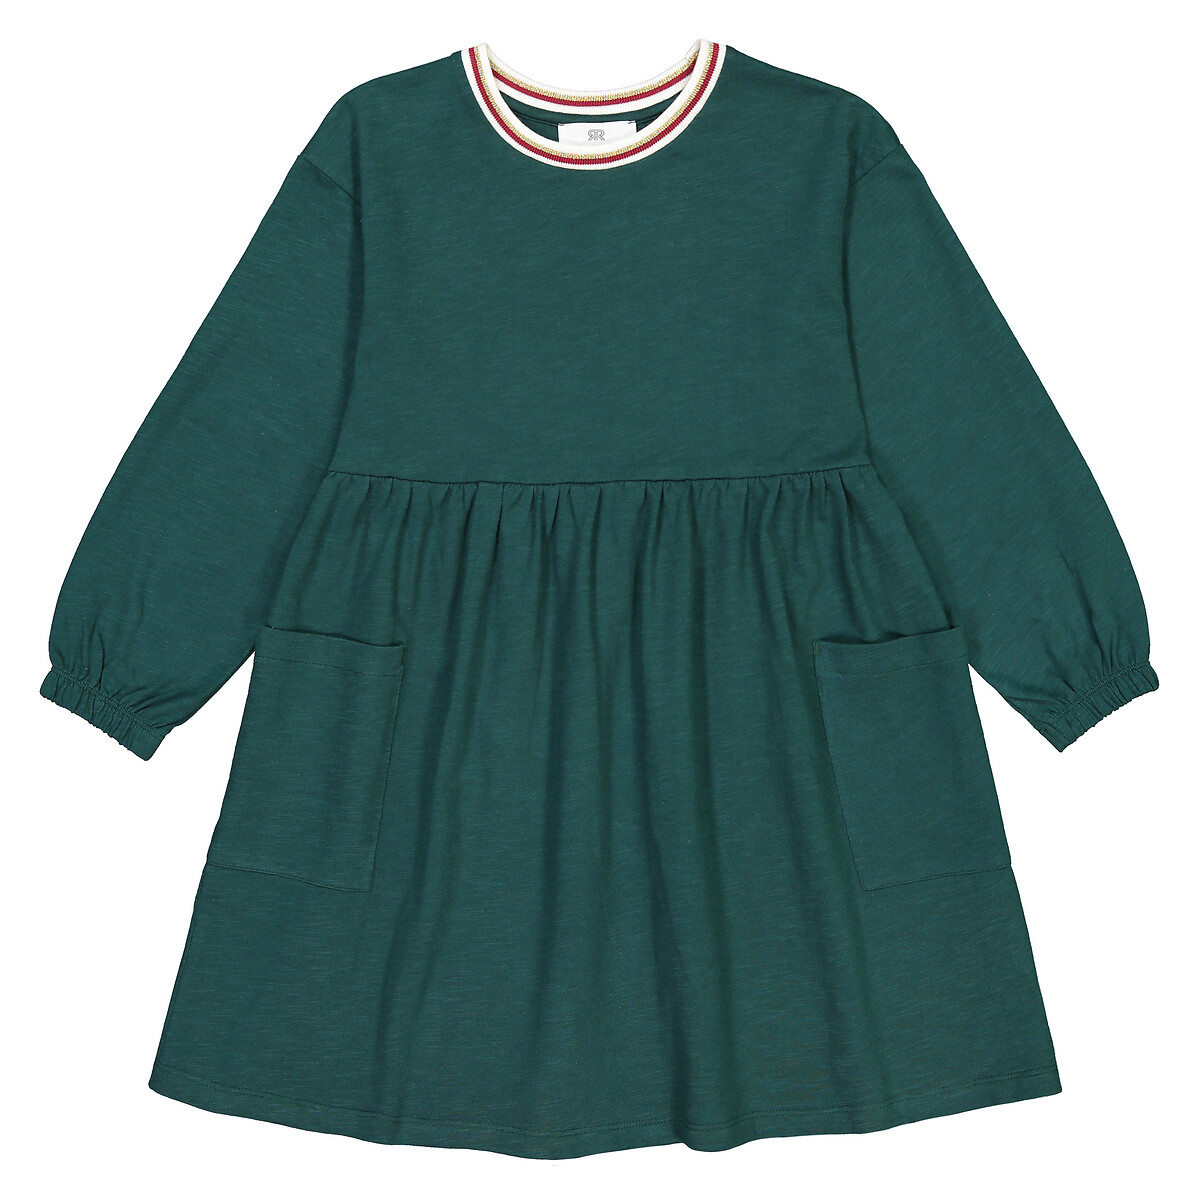 Платье LaRedoute С круглым воротником и длинными рукавами 3-12 лет 3 года - 94 см зеленый, размер 3 года - 94 см - фото 3